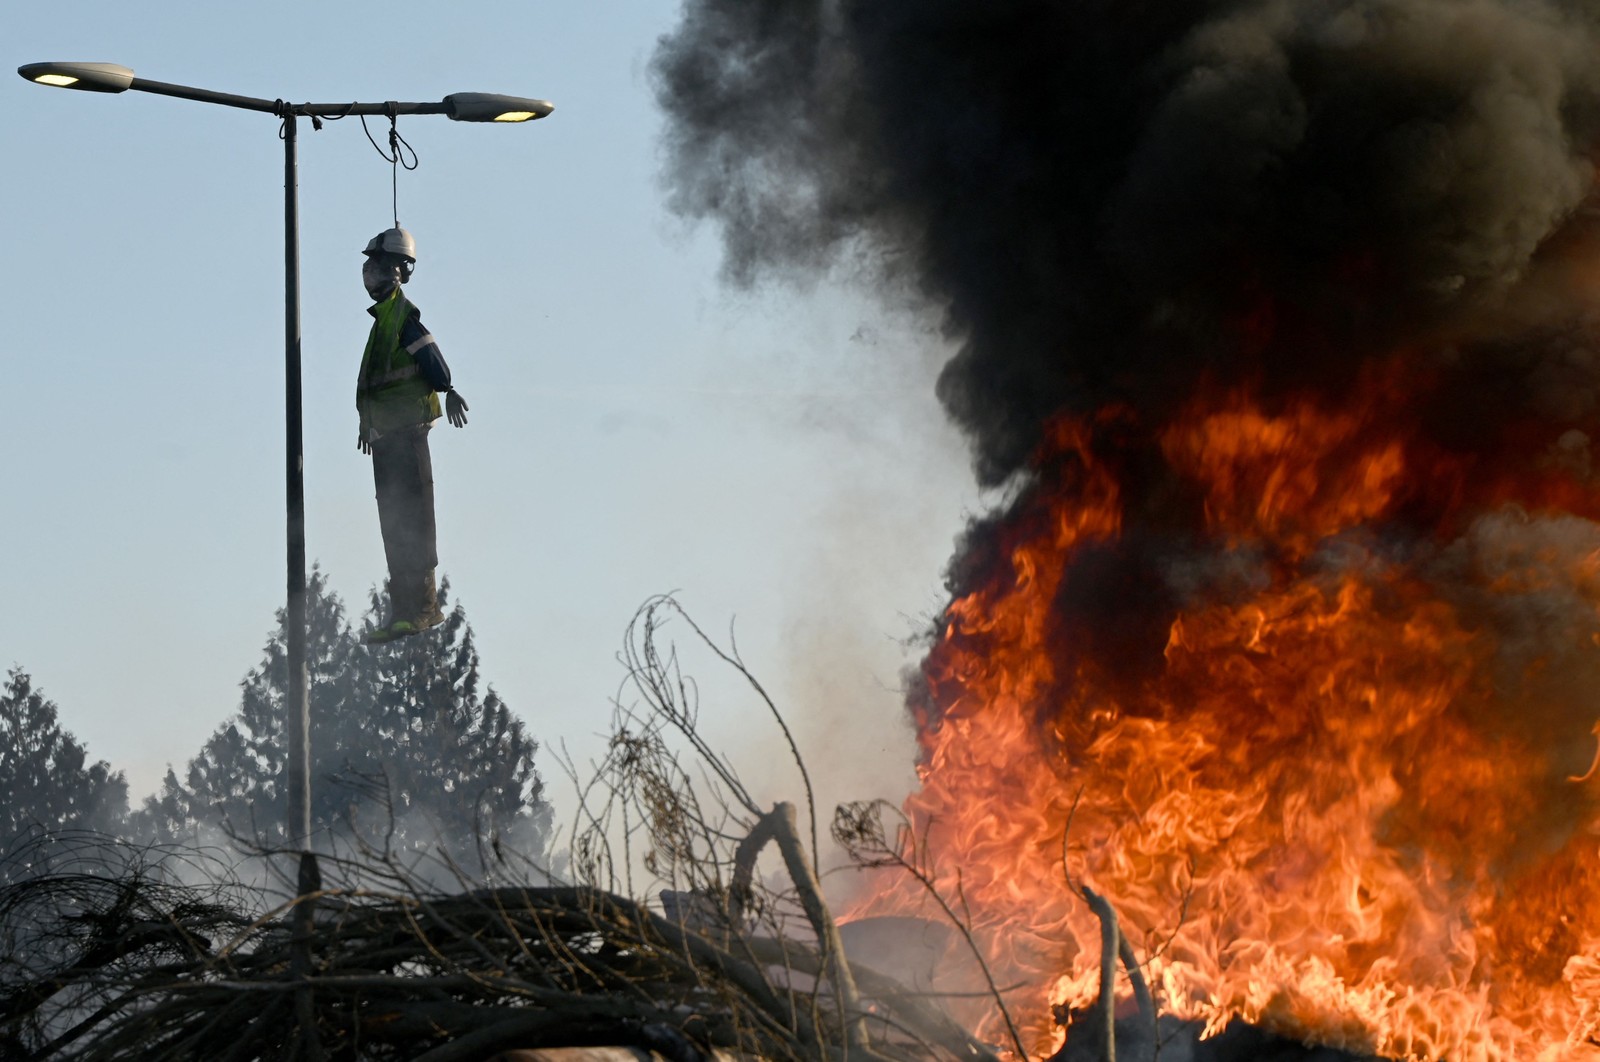 Trabalhadores da cana-de-açúcar bloqueiam o acesso à fábrica para protestar contra seu fechamento anunciado, em Escaudoeuvres, norte da França — Foto: FRANCOIS LO PRESTI/AFP